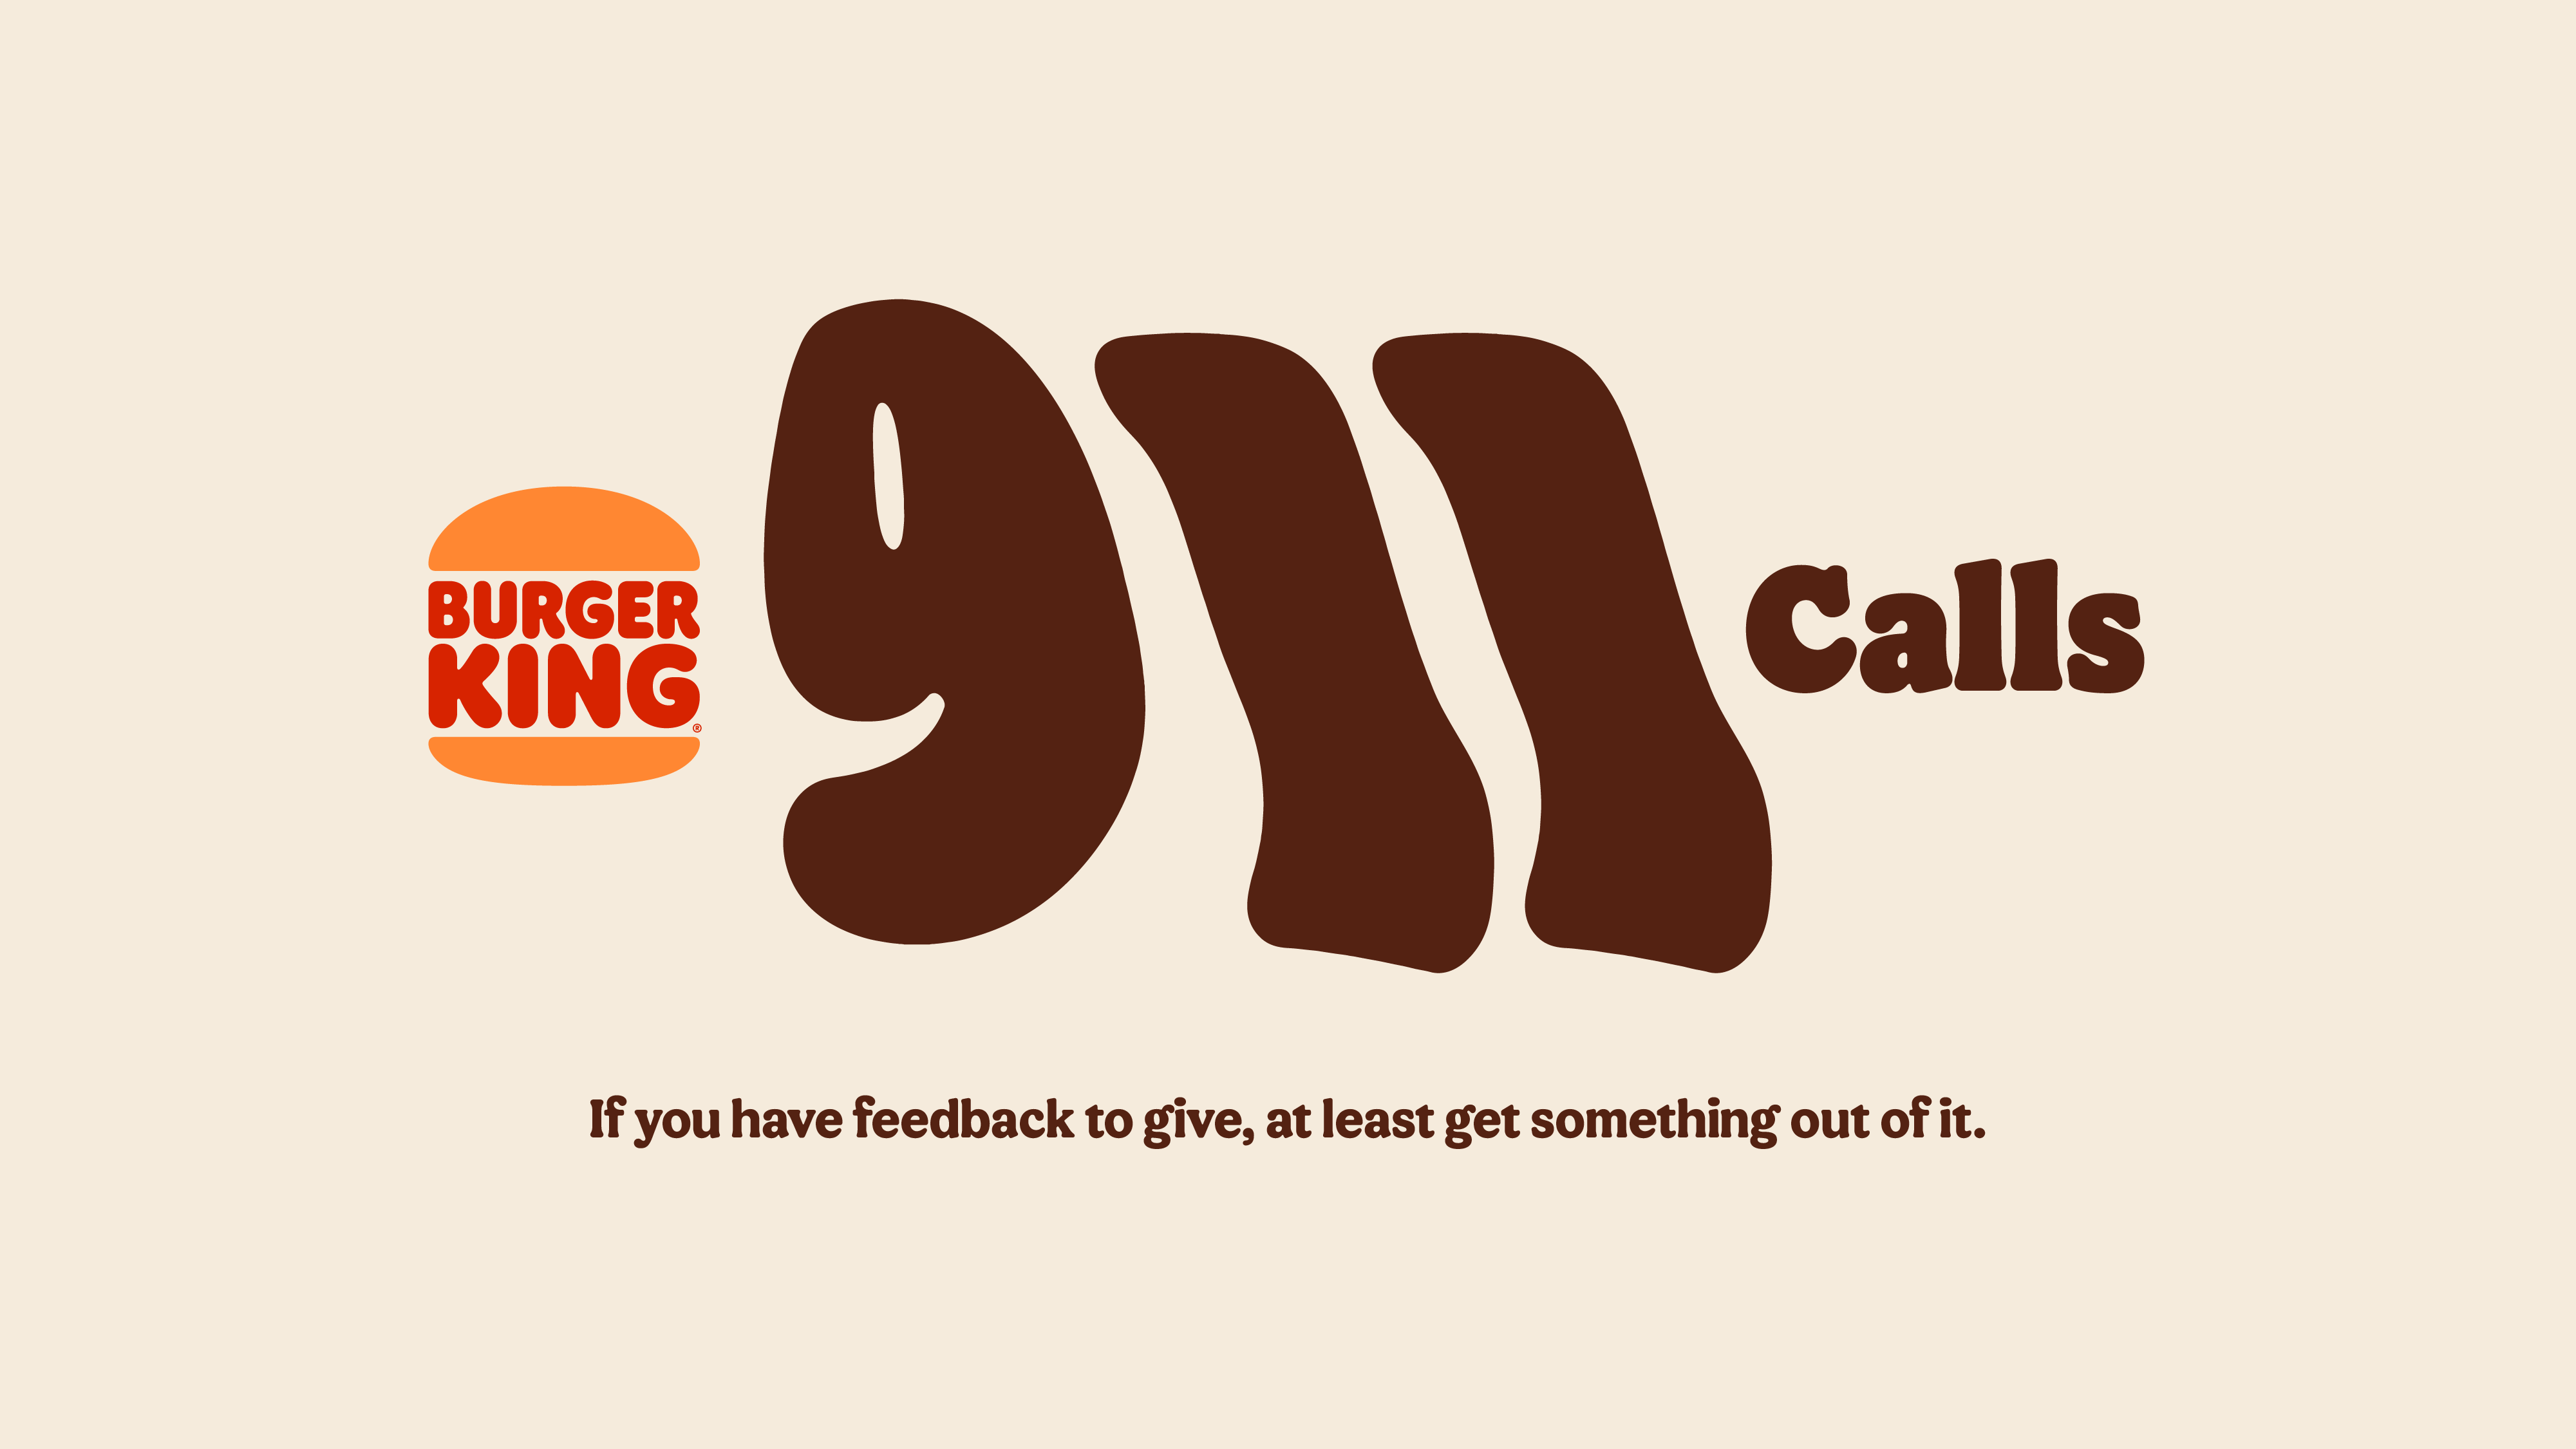 Burger King apresenta “911 Calls”